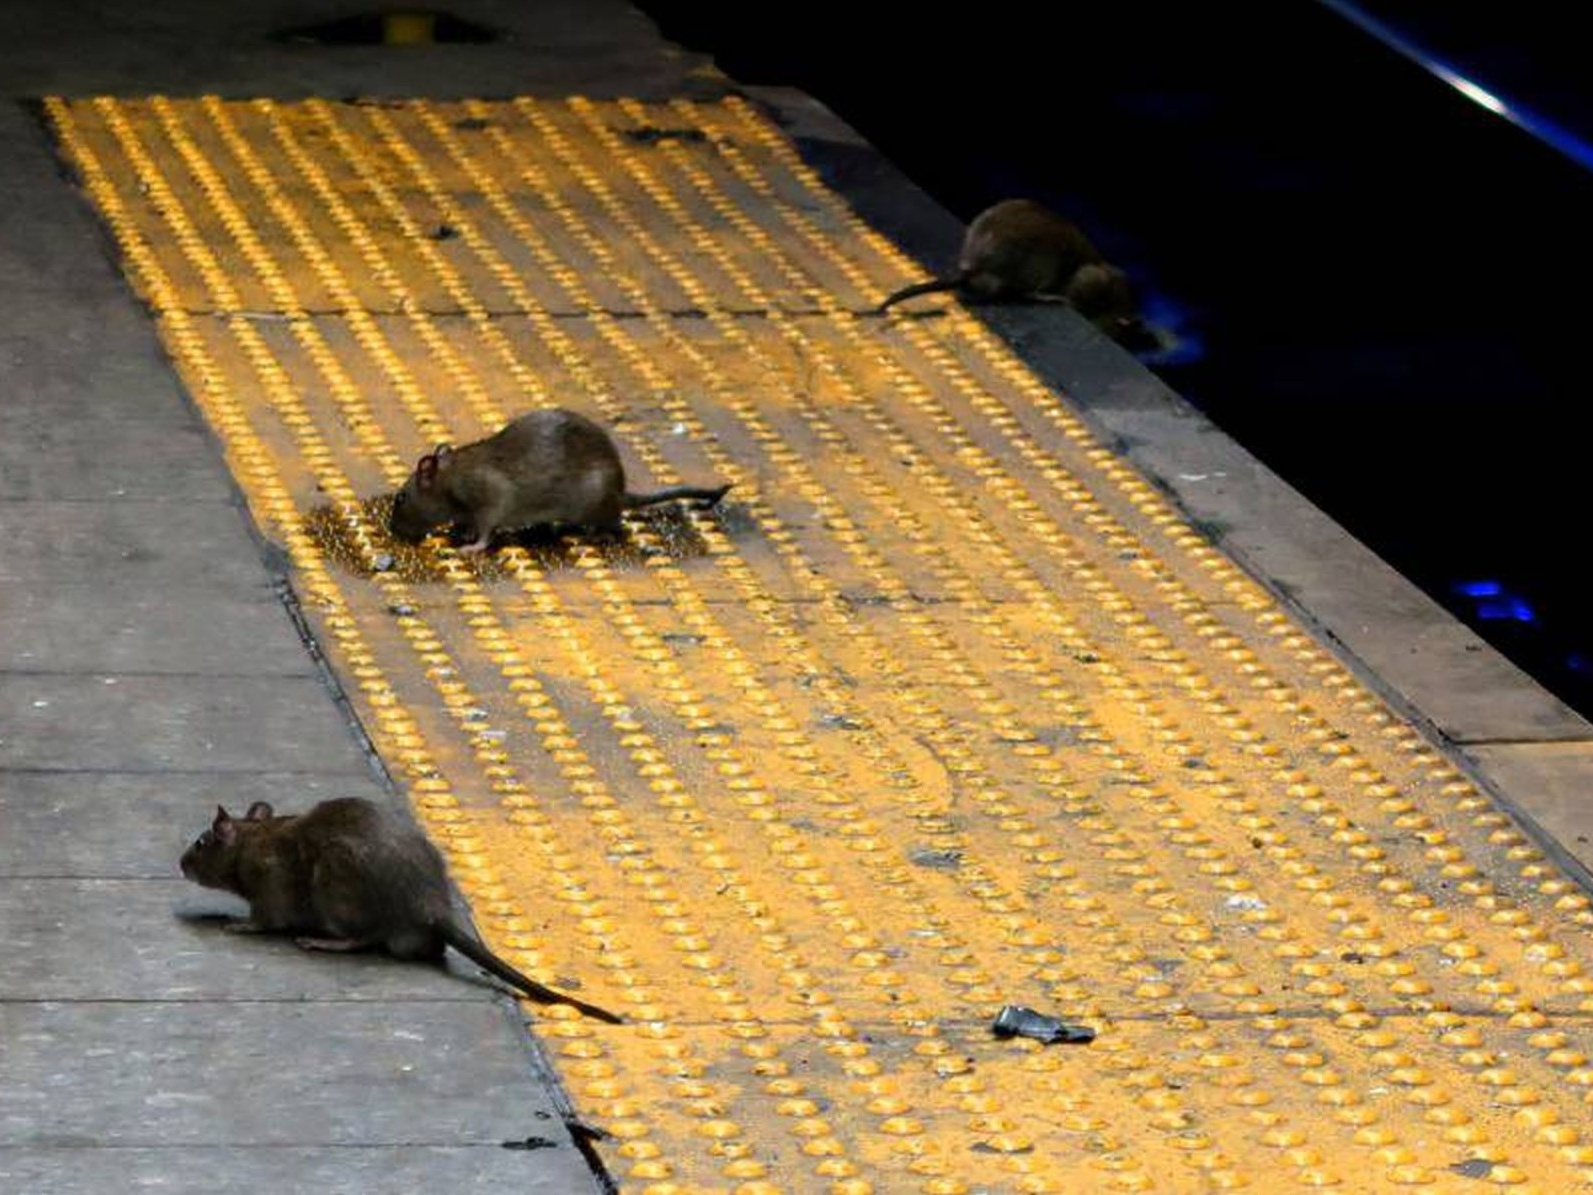 Infestação de ratos em Nova Iorque preocupa e afeta turismo e saúde